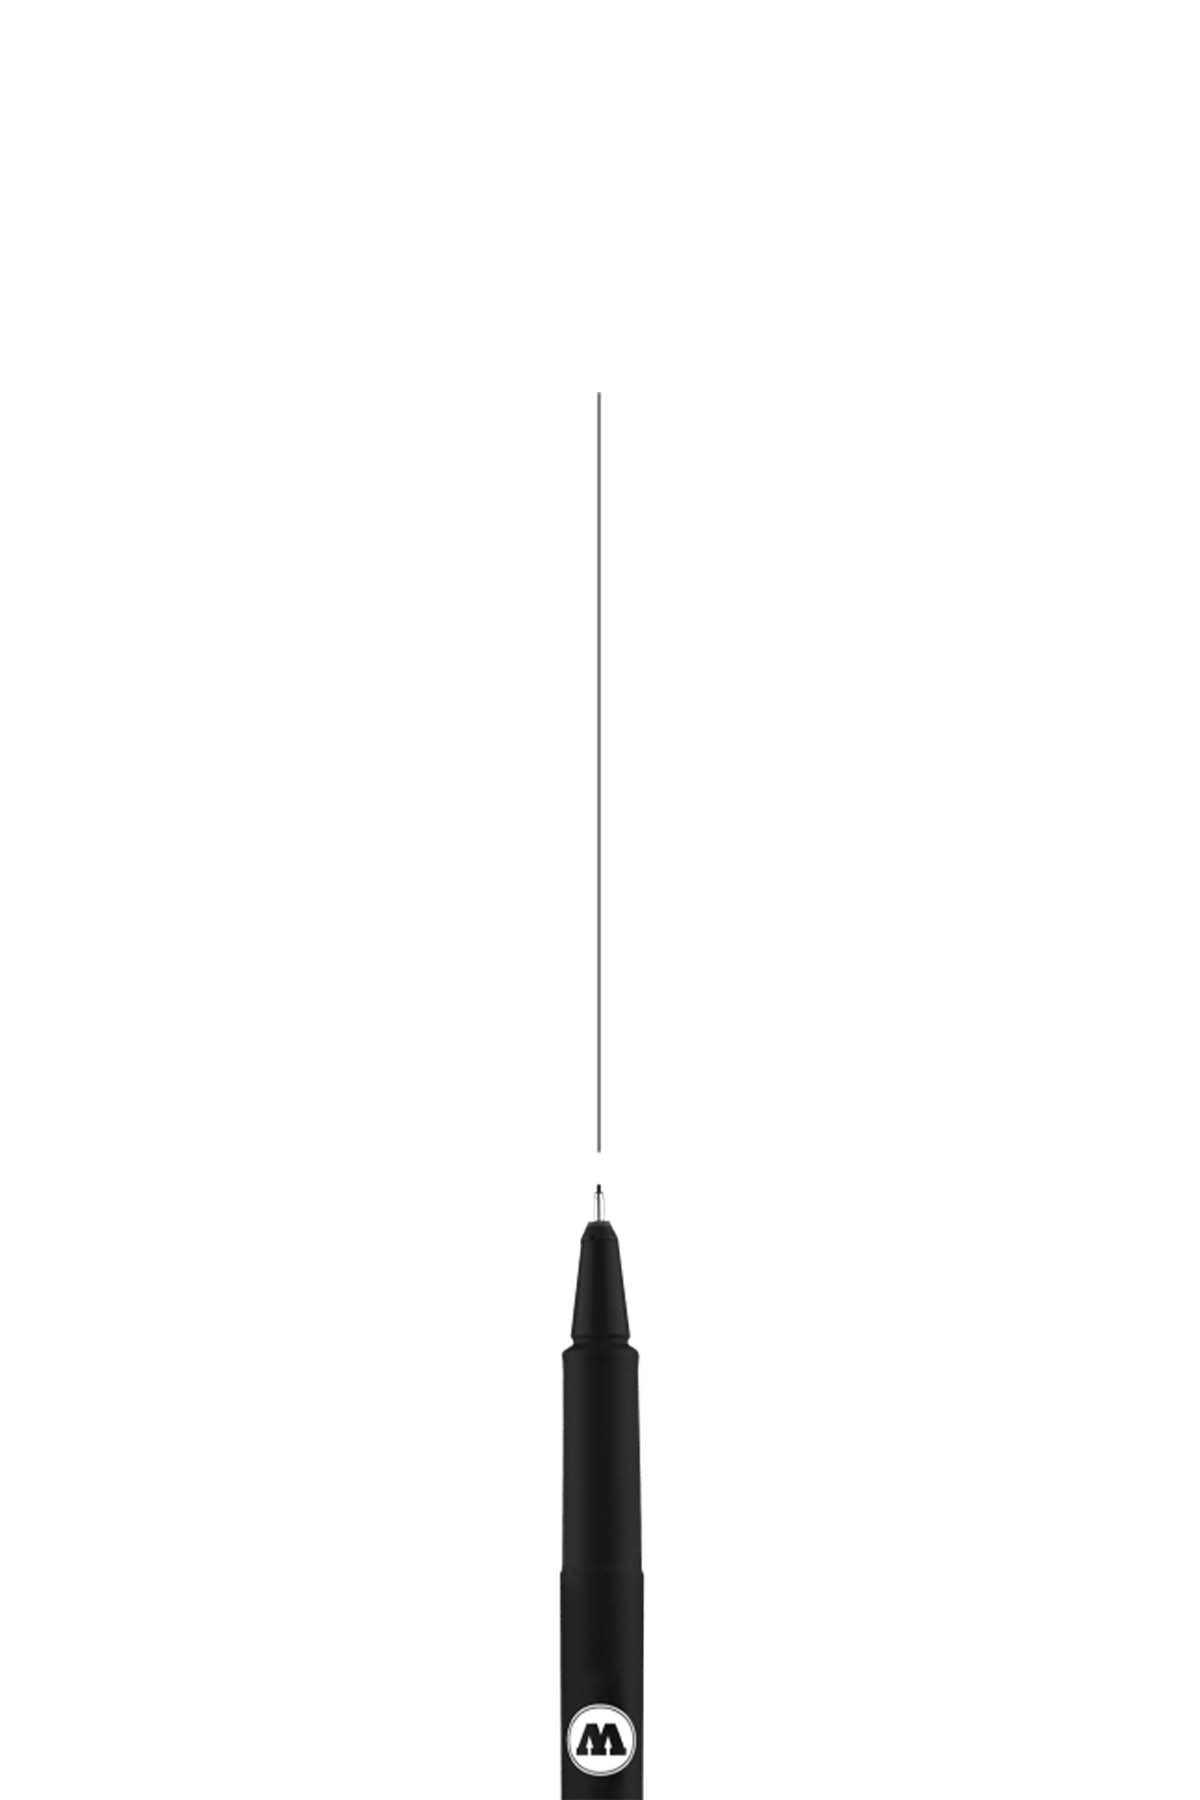 Molotow BLACKLINER Marker 0.1mm